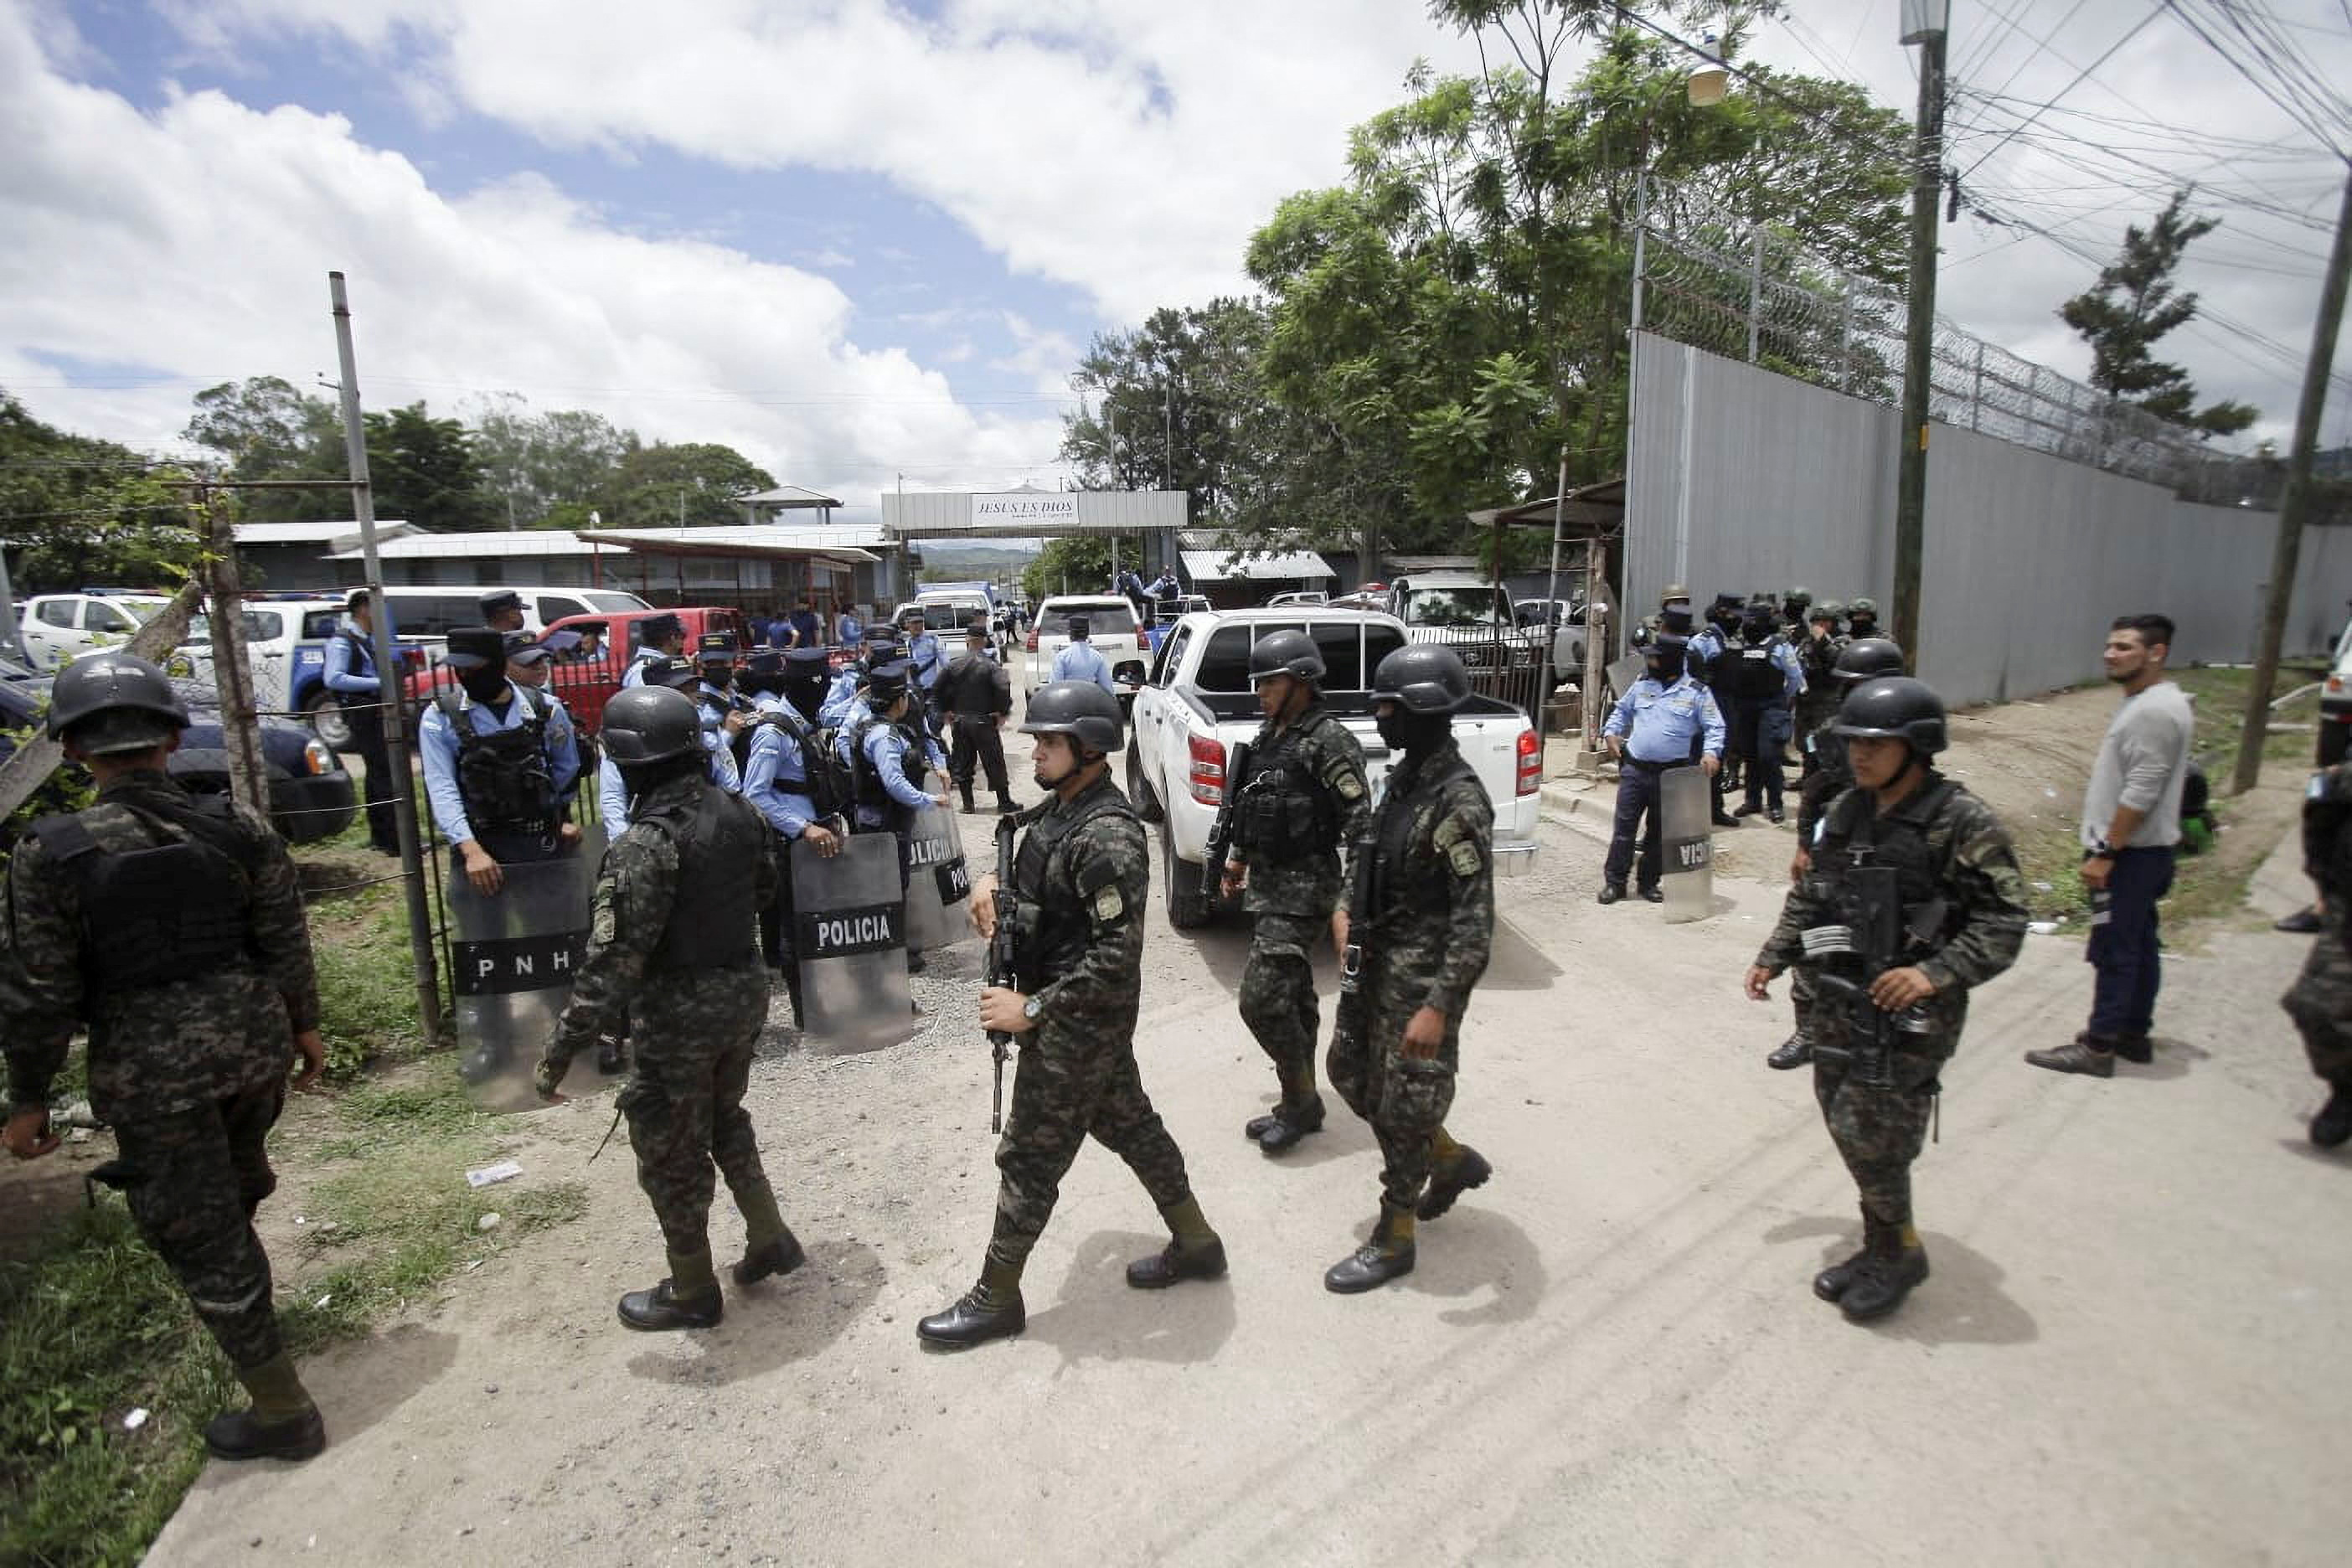 Las fuerzas de seguridad en la cárcel donde ocurrió el enfrentamiento (REUTERS/Fredy Rodriguez)